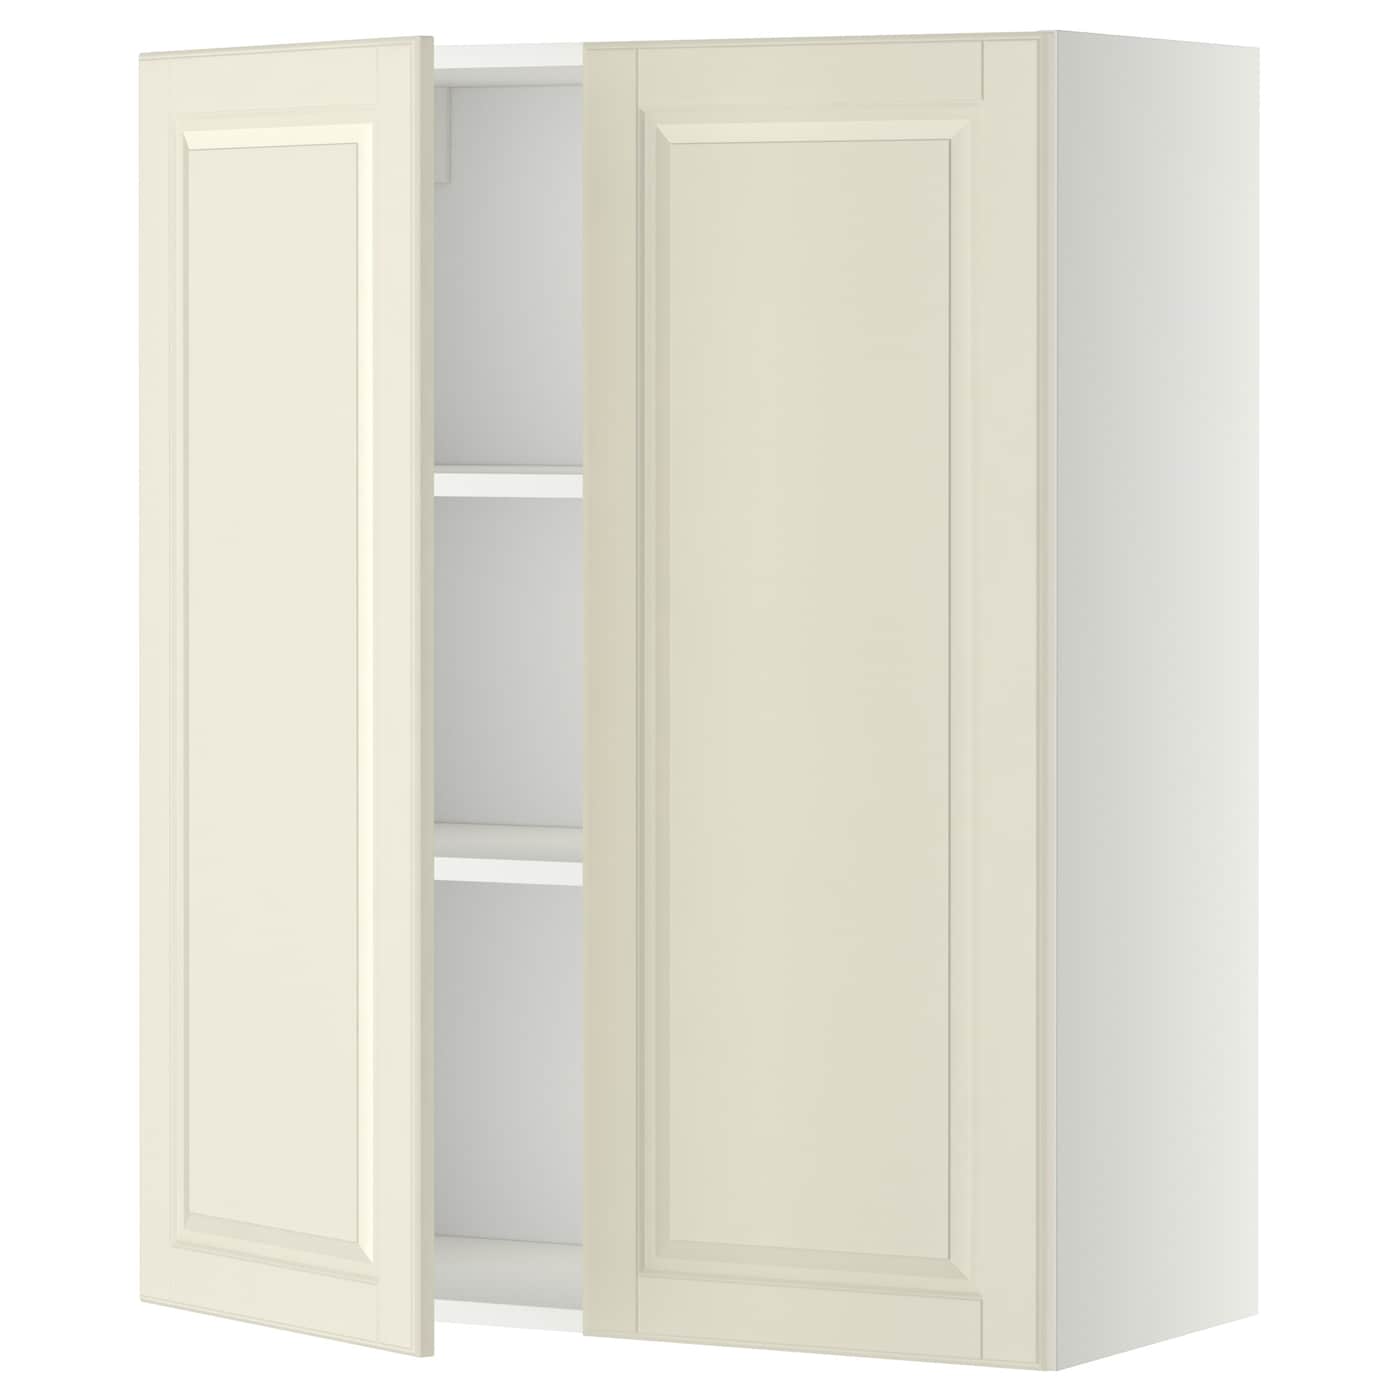 Навесной шкаф с полкой - METOD IKEA/ МЕТОД ИКЕА, 80х100 см, белый/кремовый